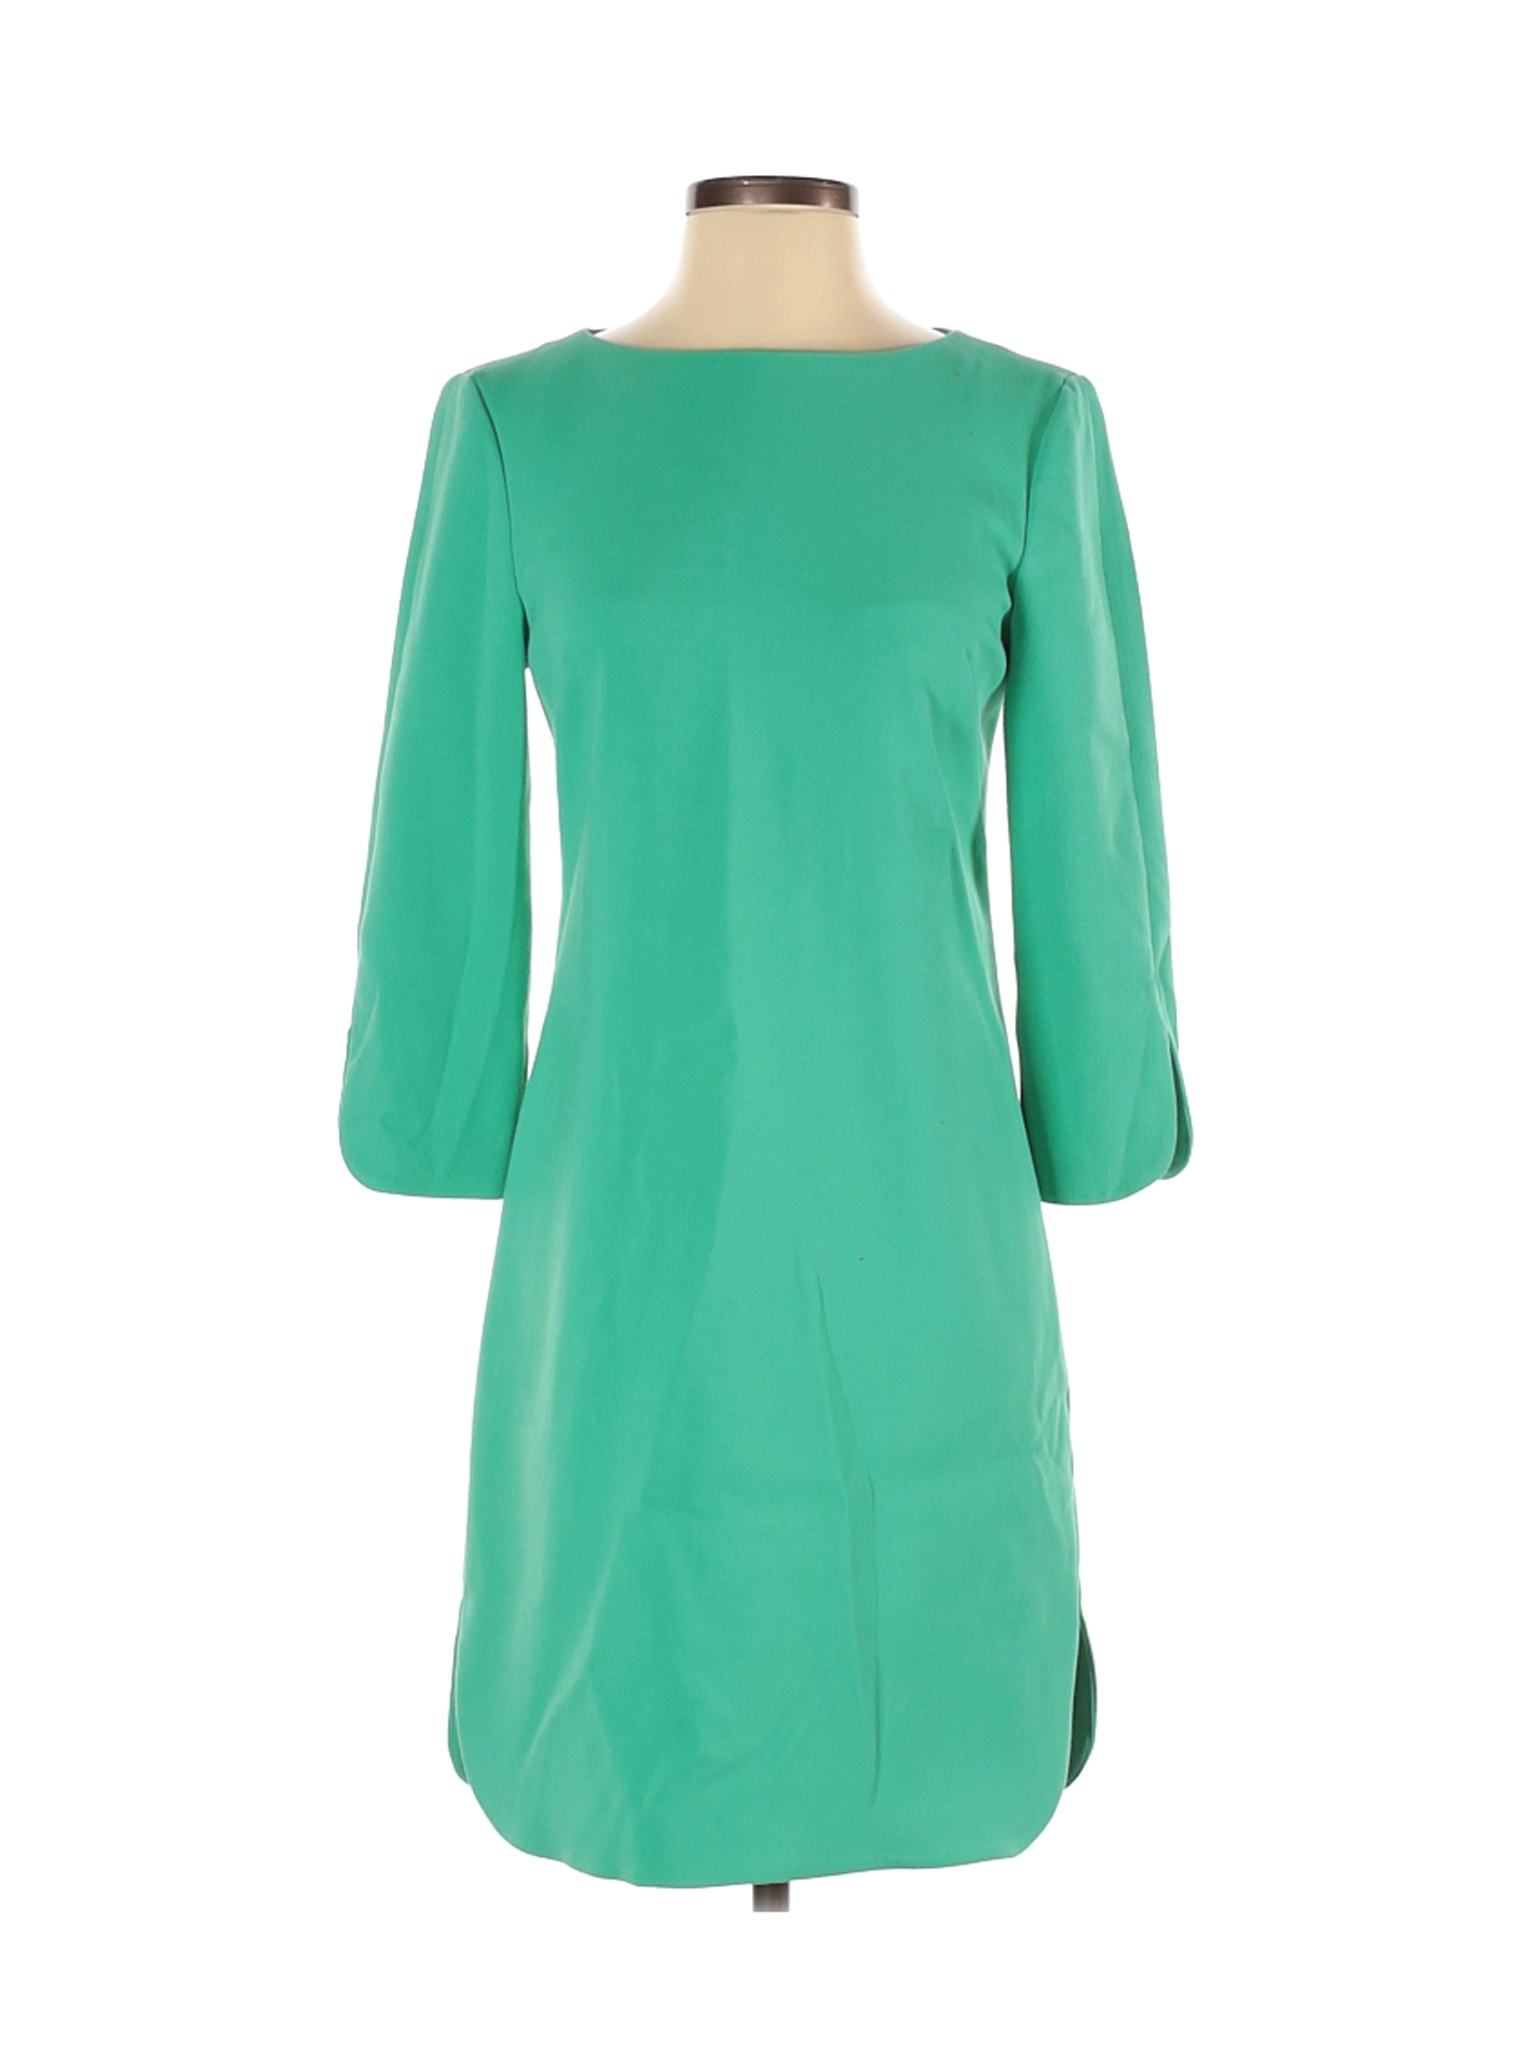 Eliza J Women Green Casual Dress 2 | eBay